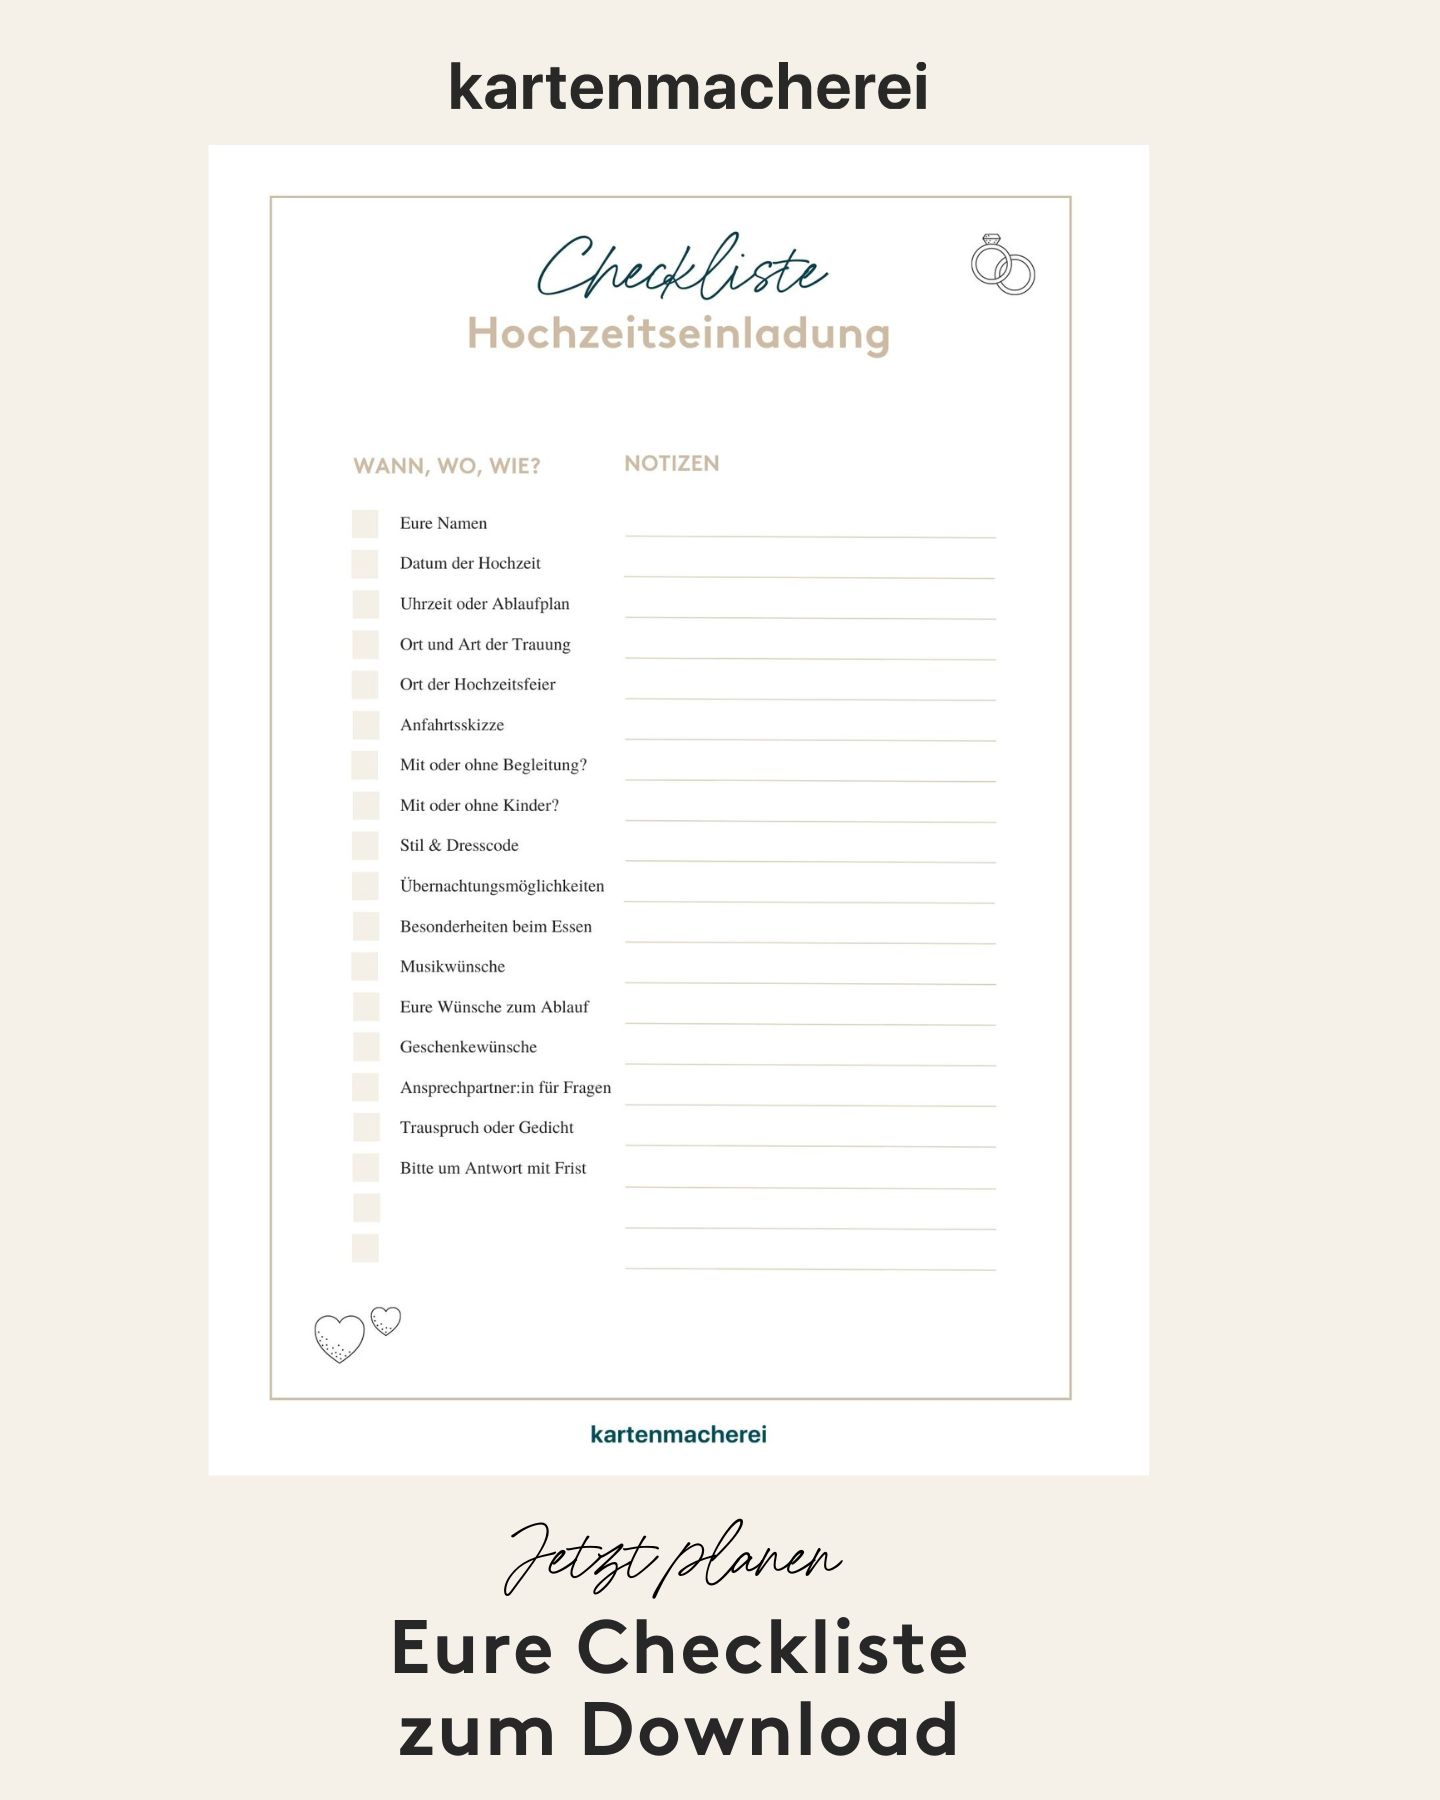 Checkliste für die wichtigsten Informationen in einer Hochzeitseinladung